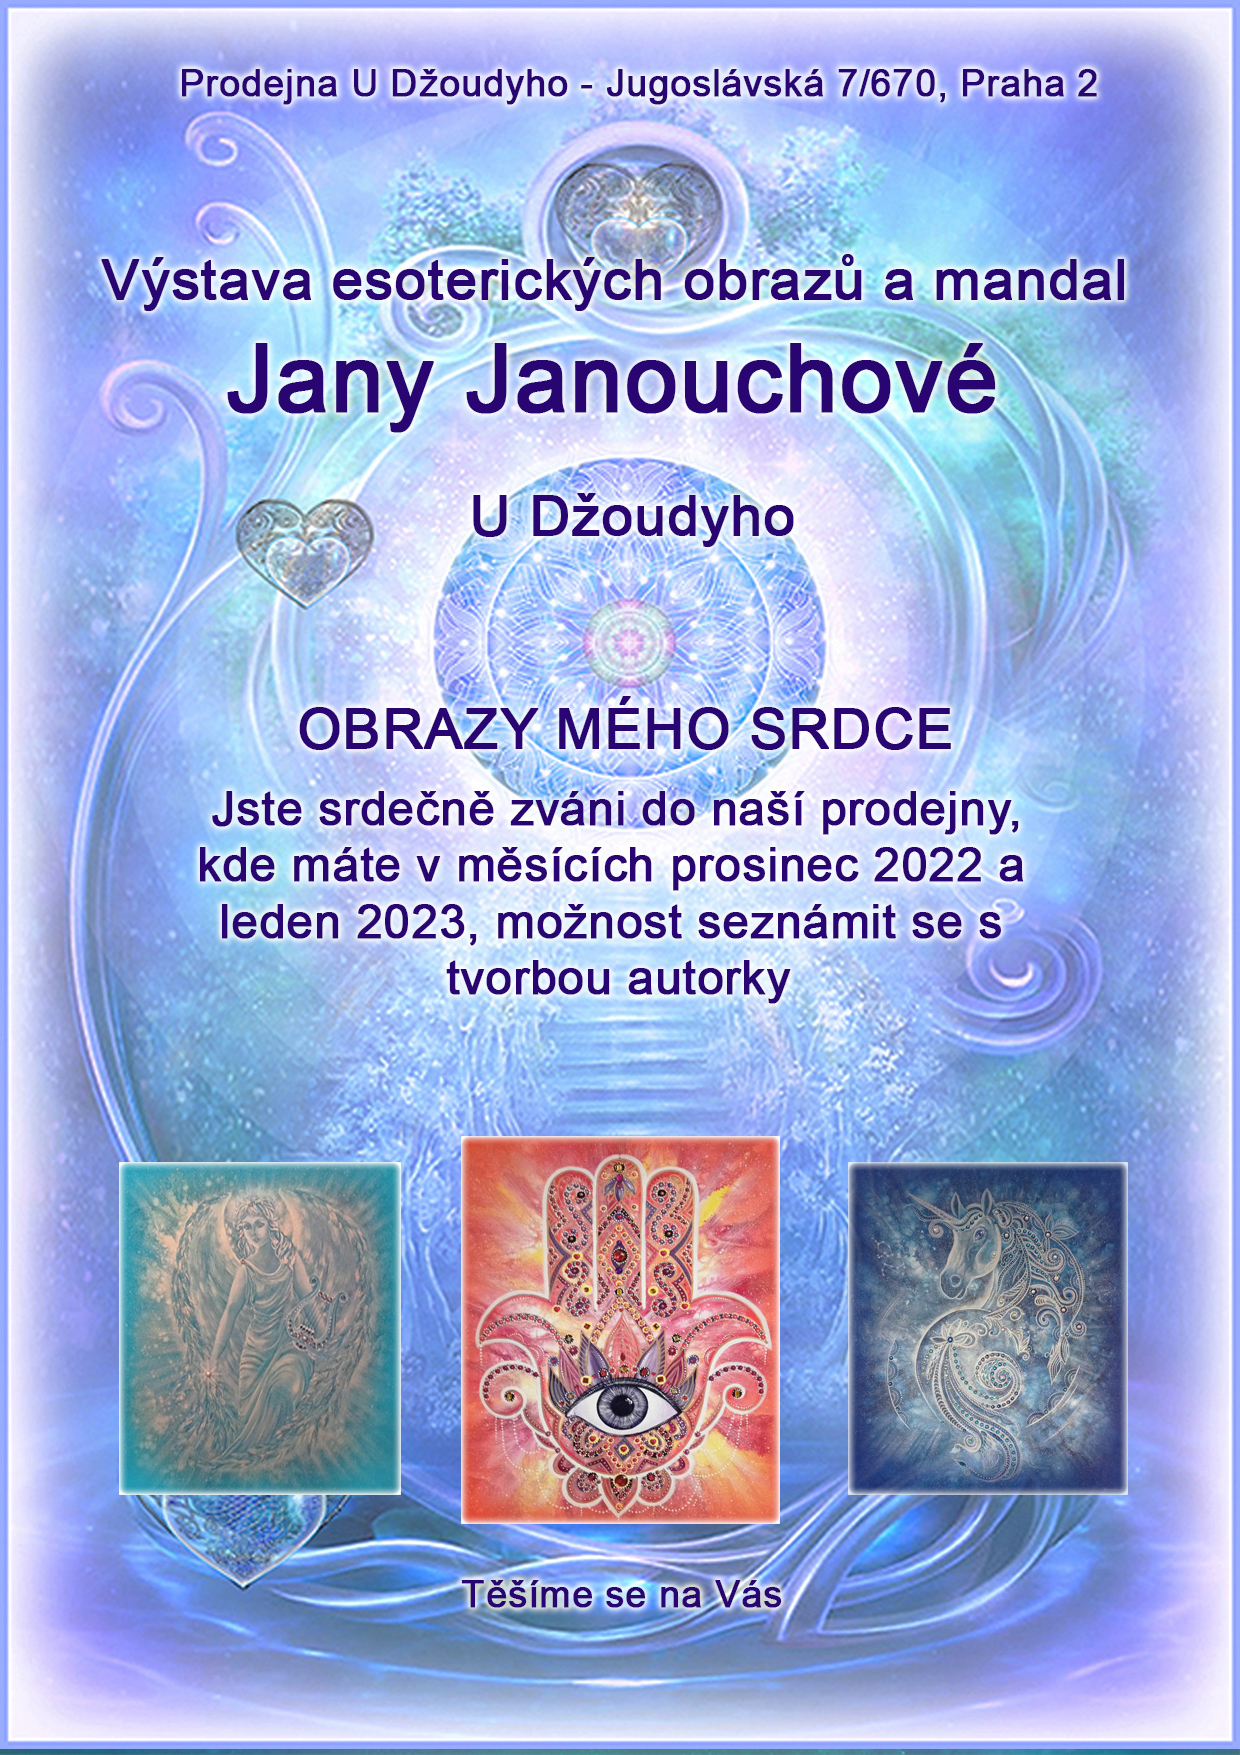 VÝSTAVA: Prodejní výstava obrazů a mandal od autorky Jany Janouchové